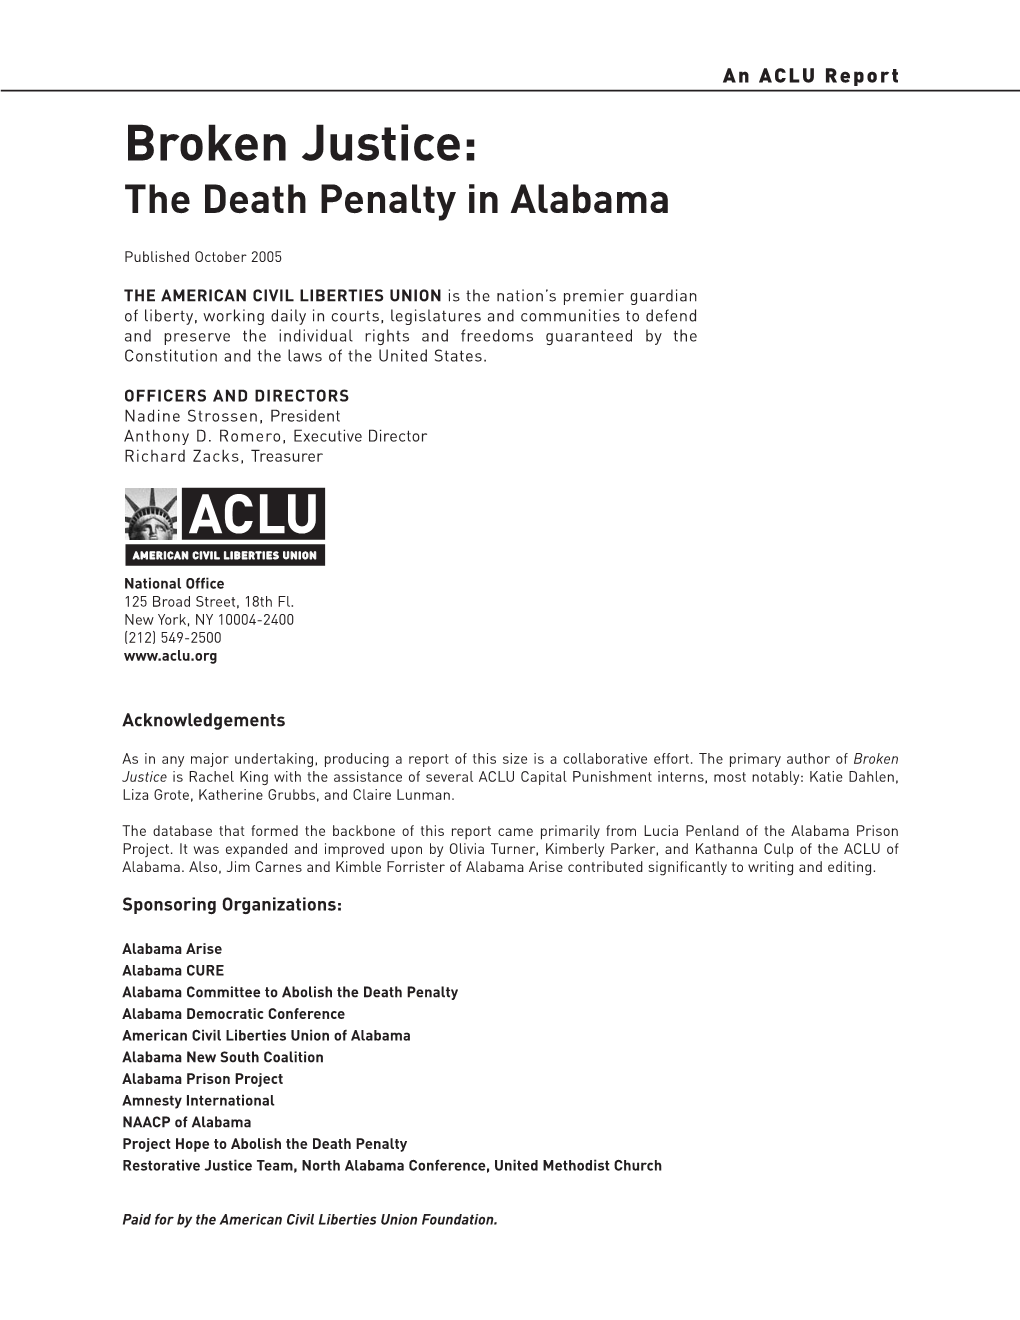 Broken Justice: the Death Penalty in Alabama